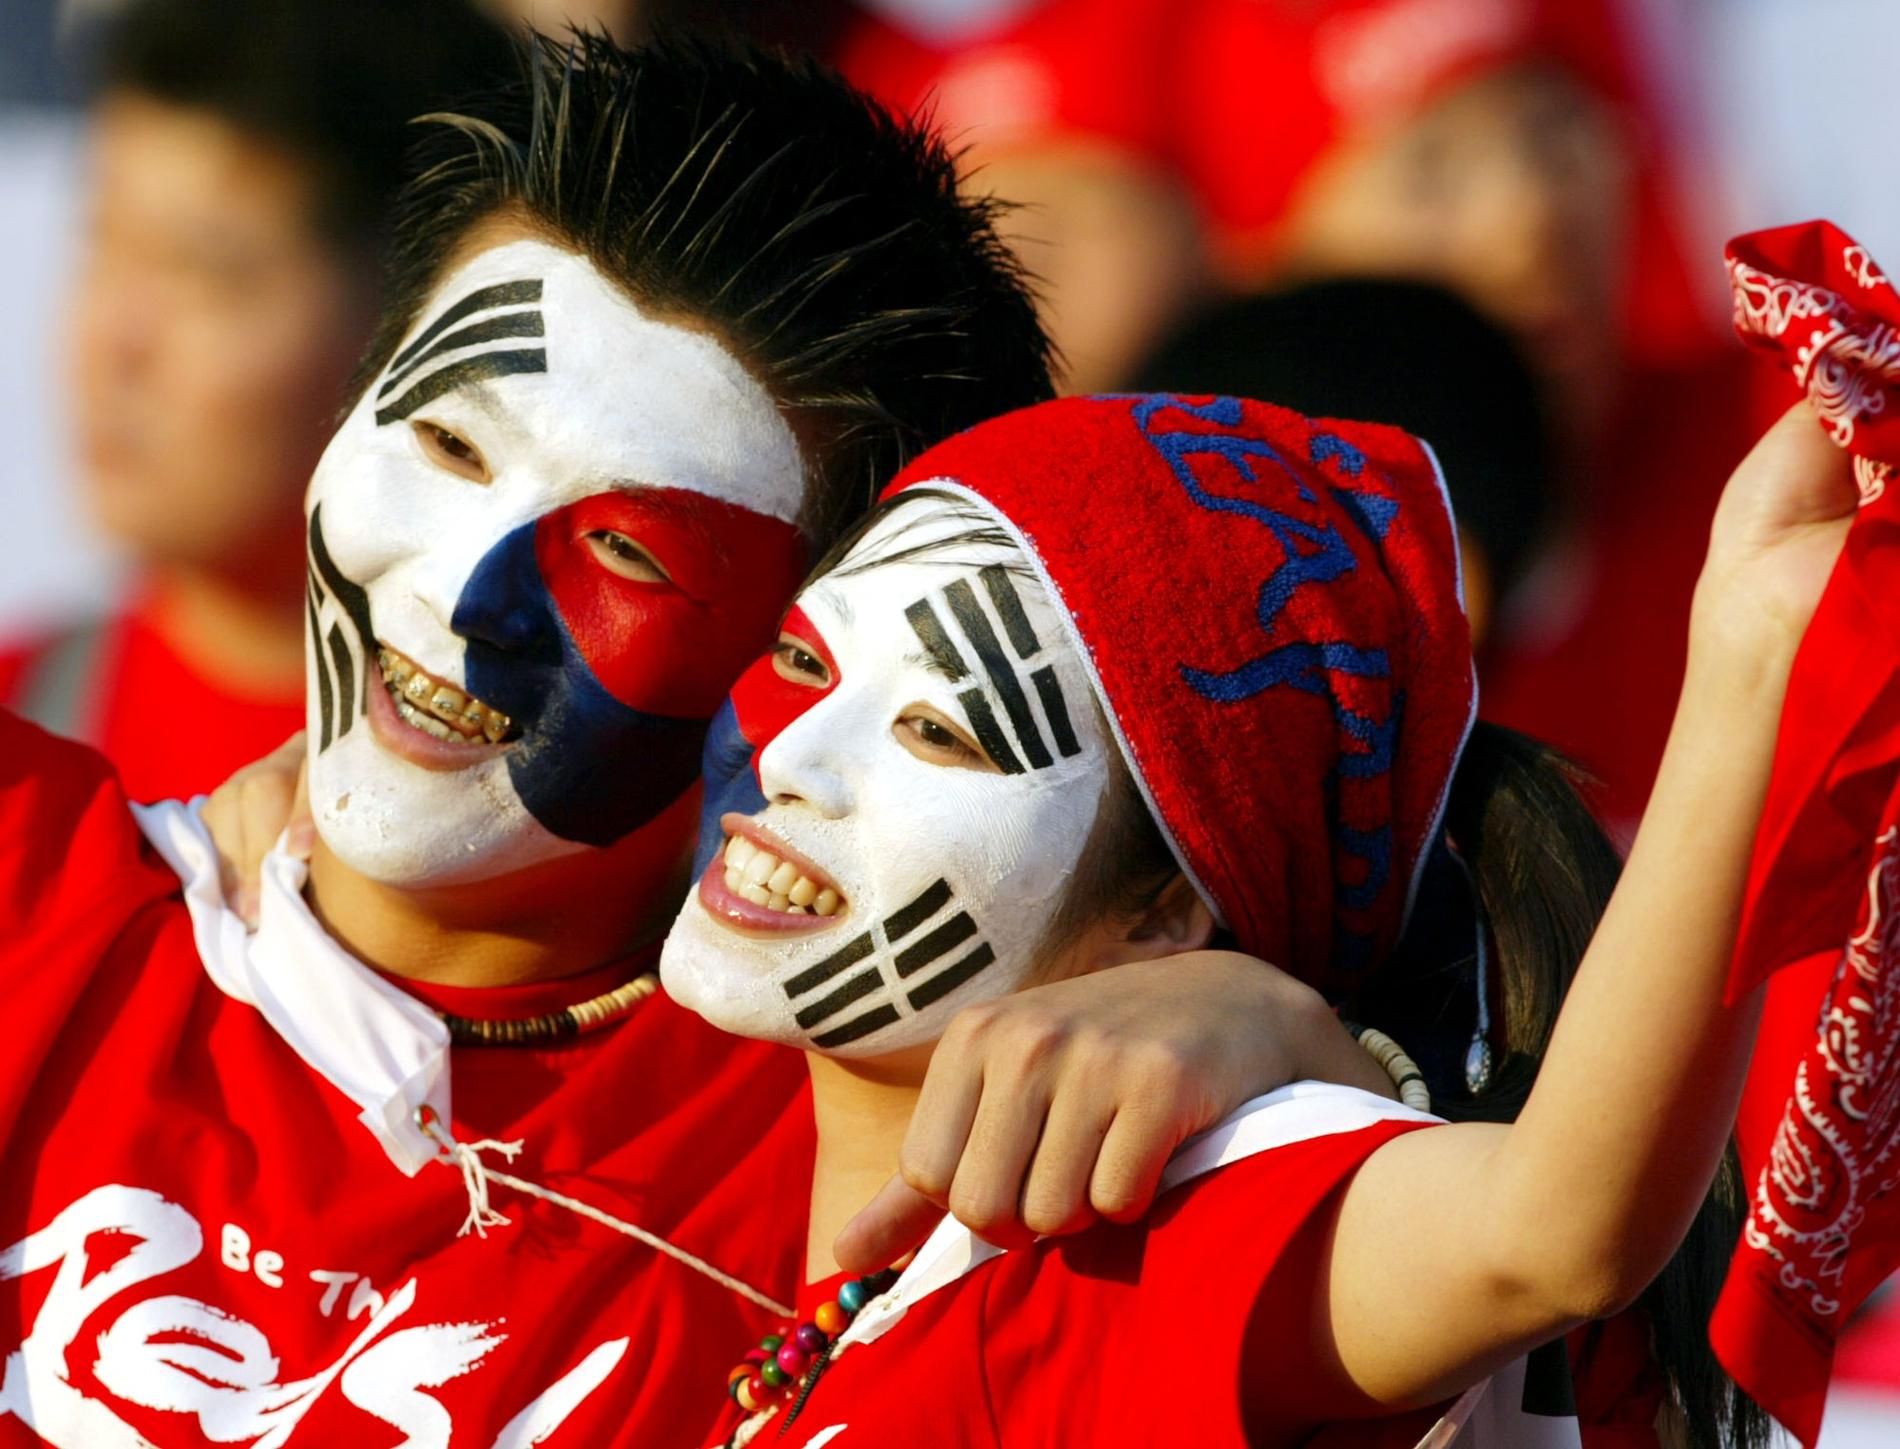 Unga sydkoreaner jublar. Dock inte efter detta besked. Bilden kommer från Sydkoreas framgångsrika fotbolls-VM 2002.